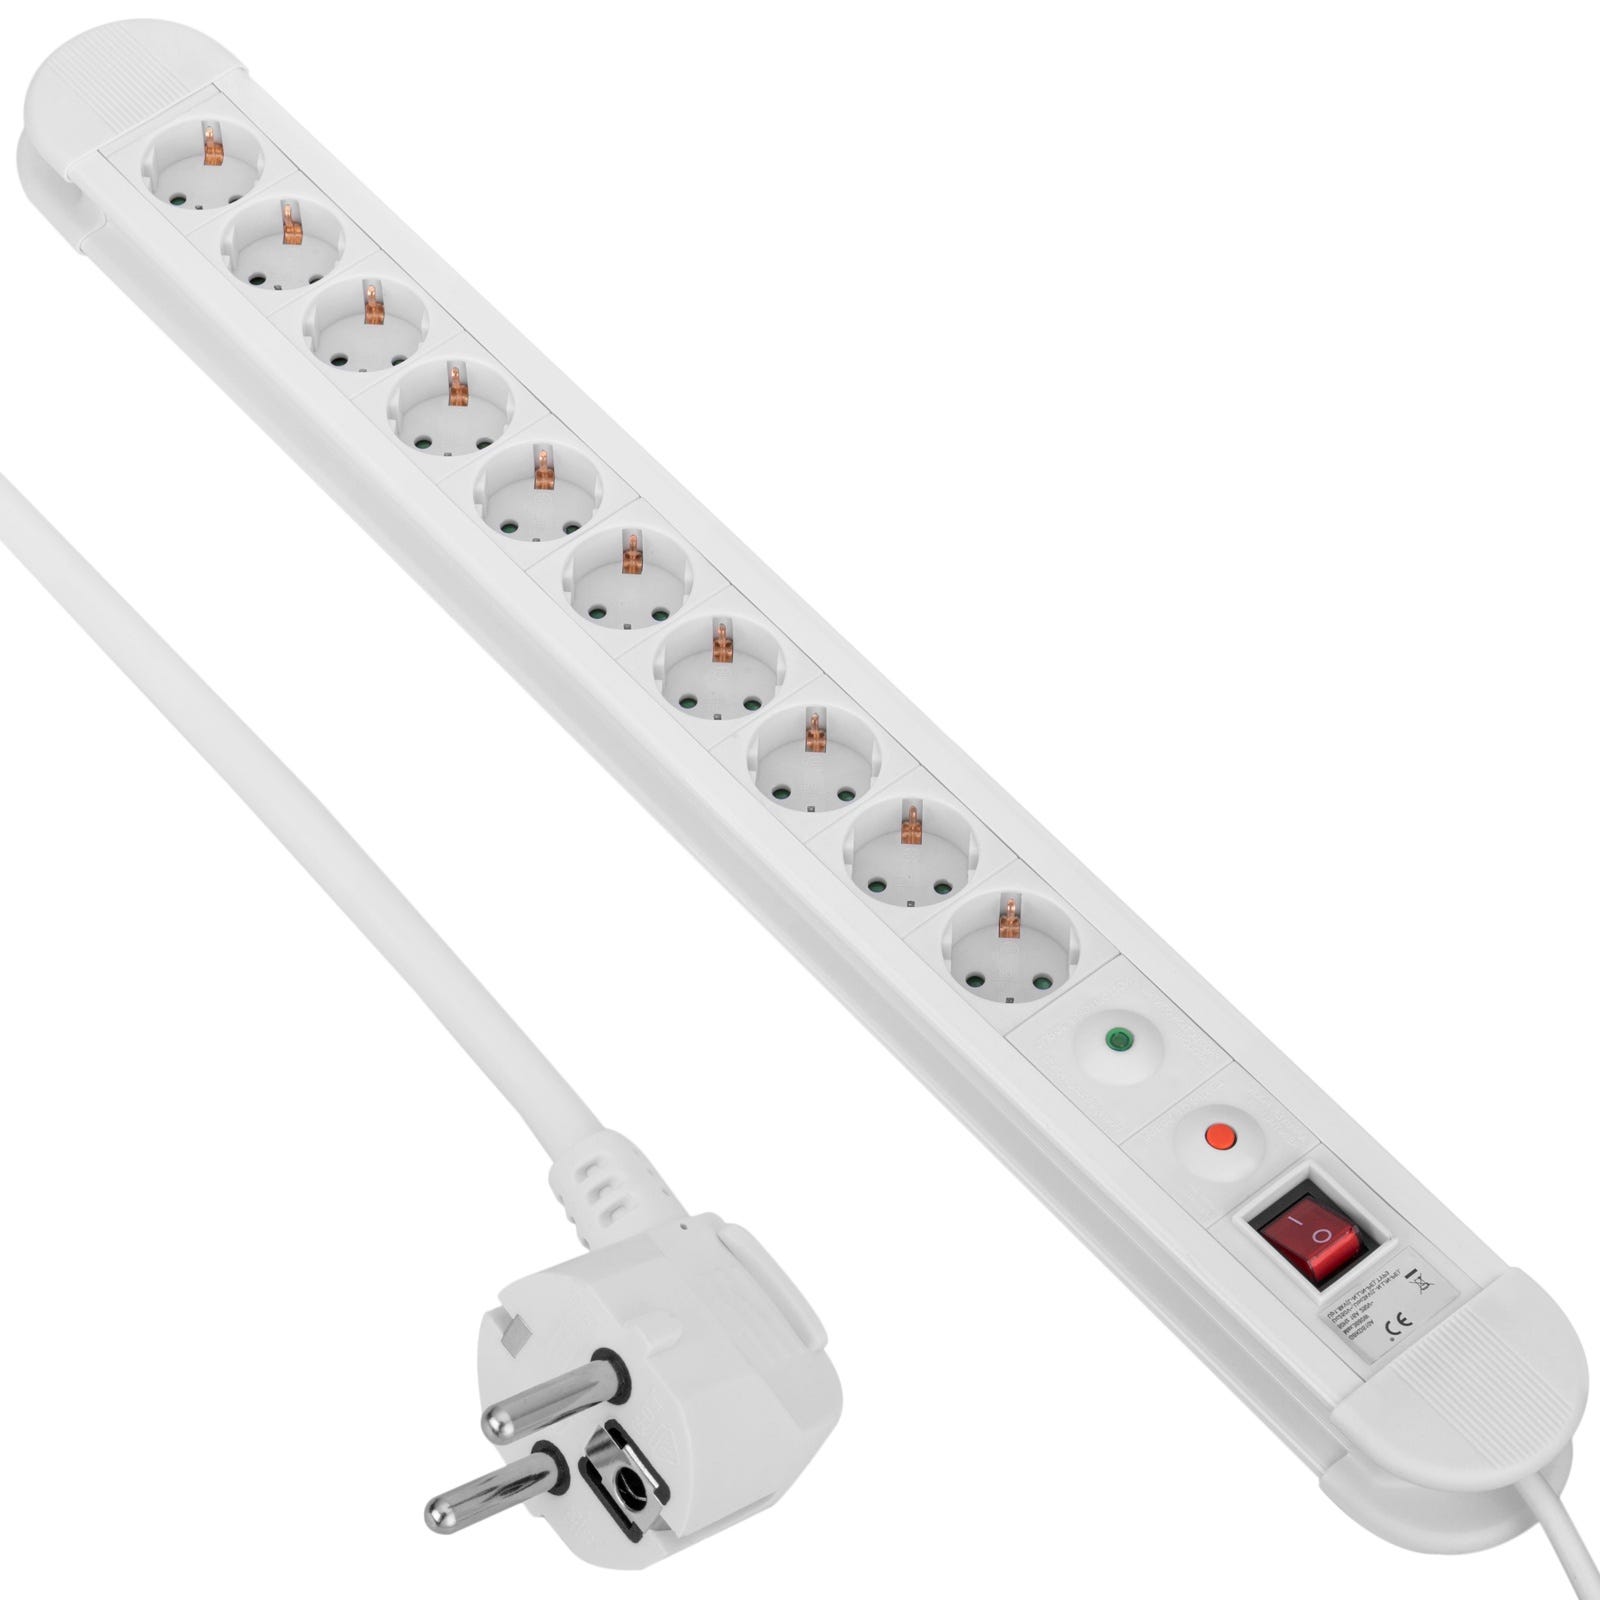 CableMarkt - Regleta de 4 enchufes schuko blanco con interruptor individual